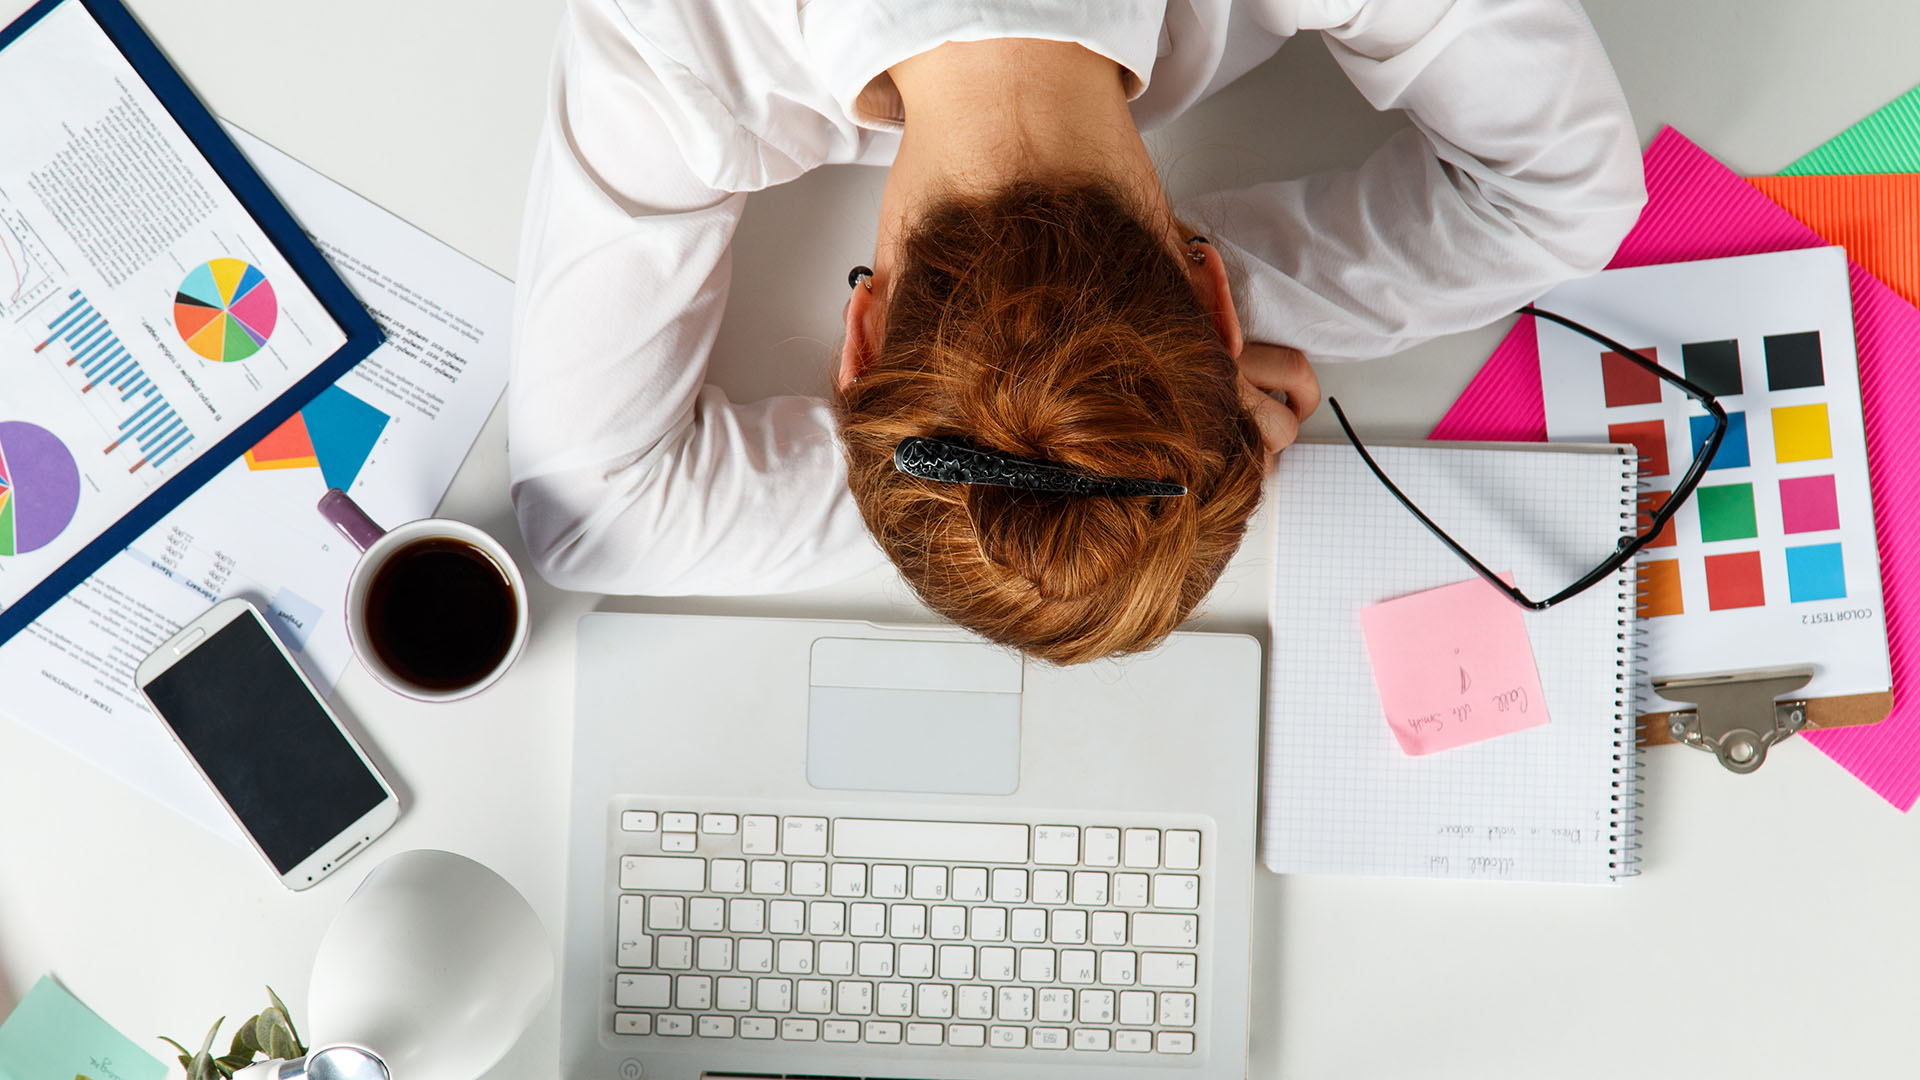 Las mujeres están más agotadas, apáticas y presentan mayores niveles de ansiedad, somatizaciones y depresión que los hombres (Shutterstock)